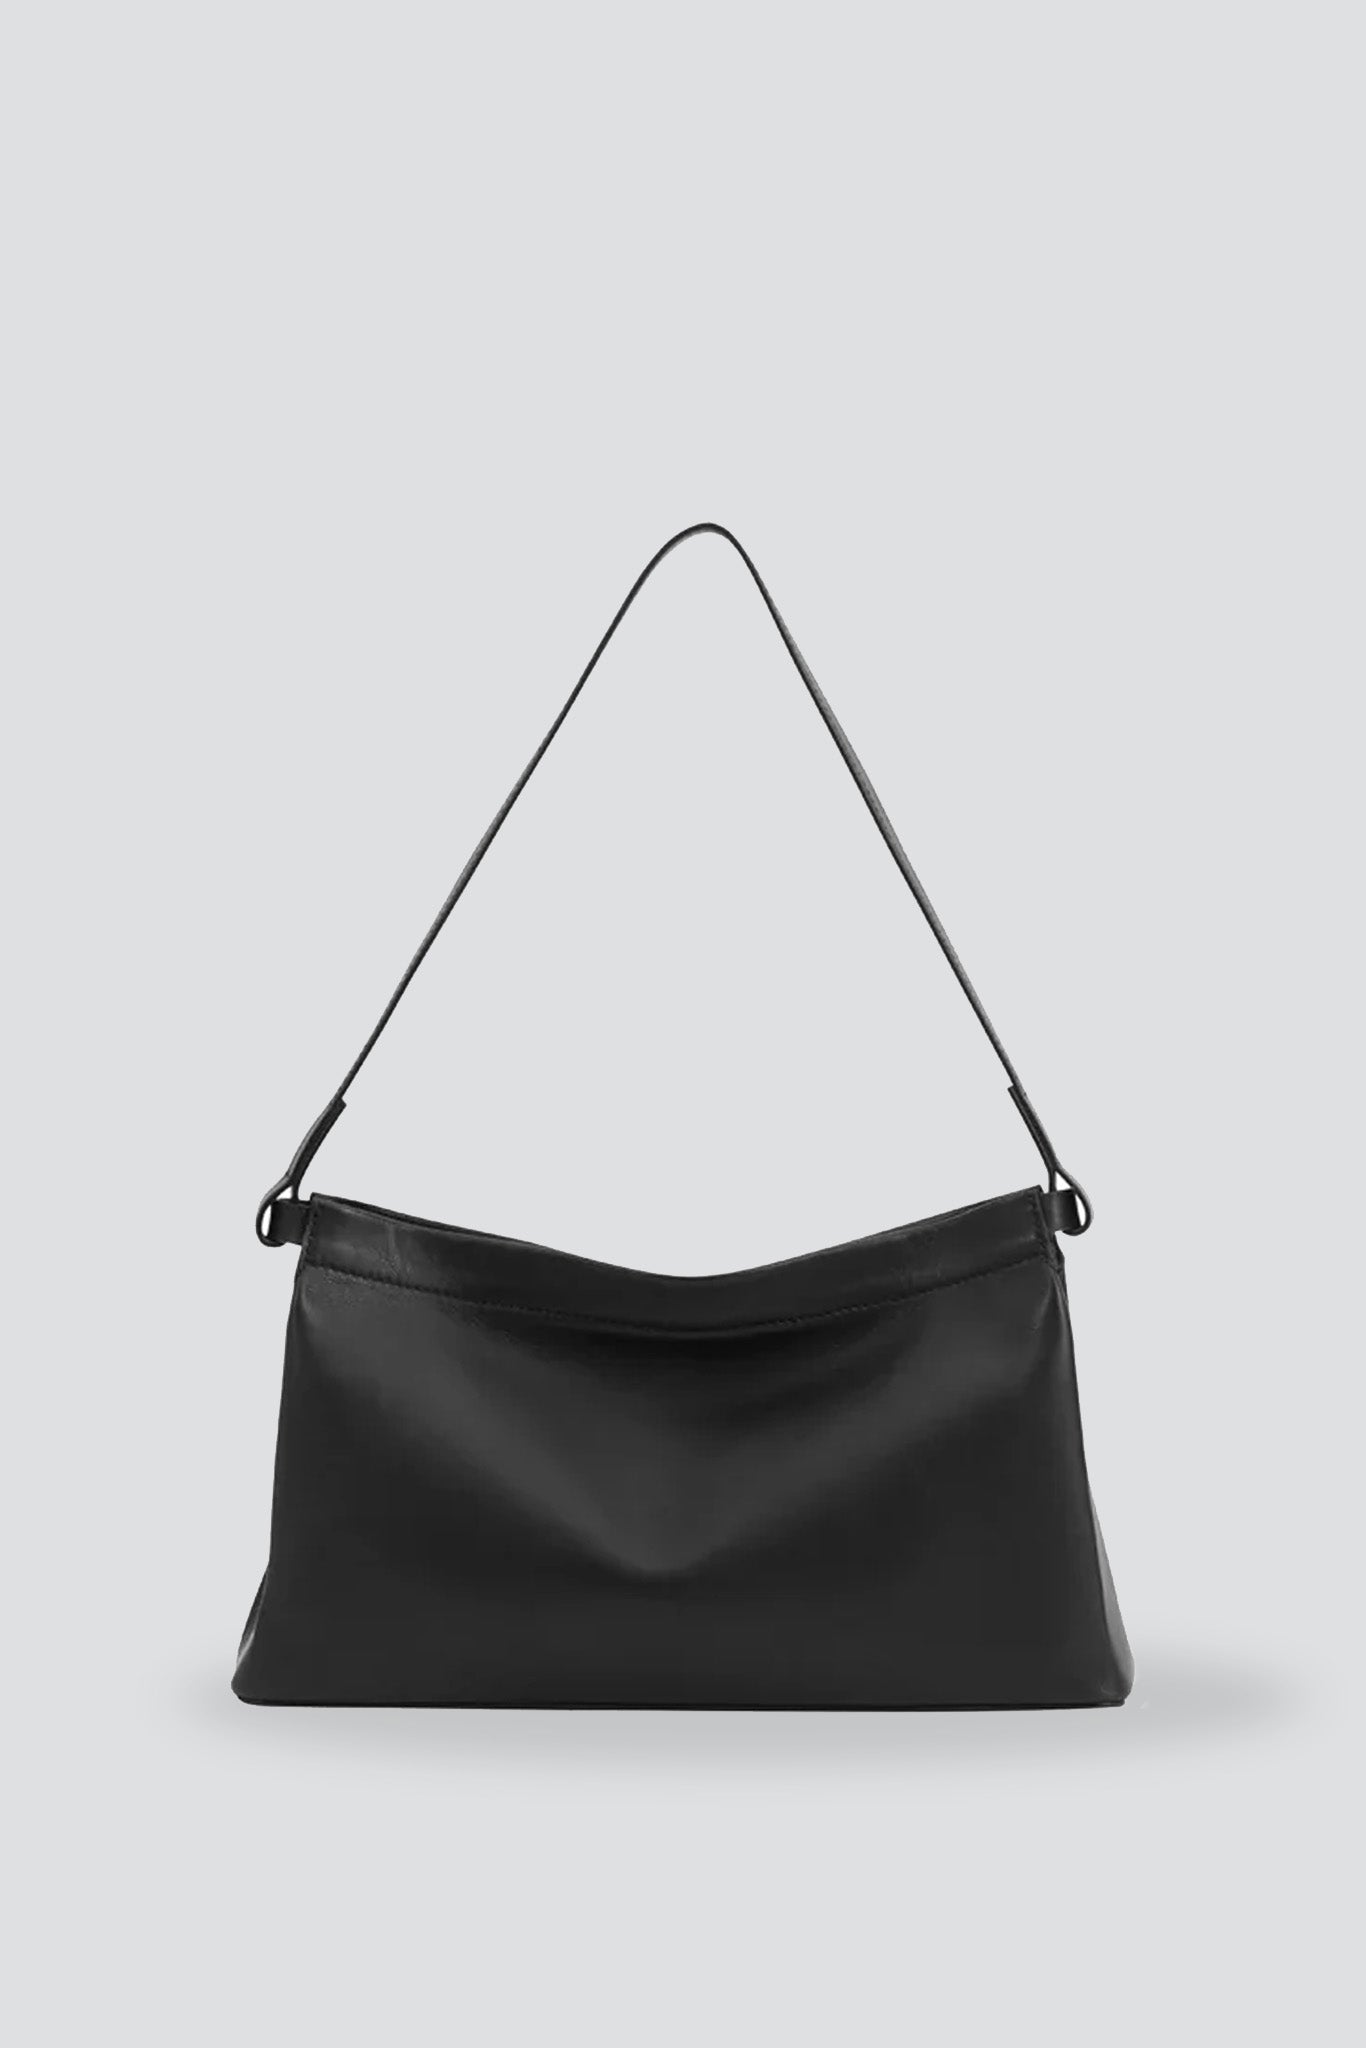 Aesther Ekme Baguette Leather Shoulder Bag In Black